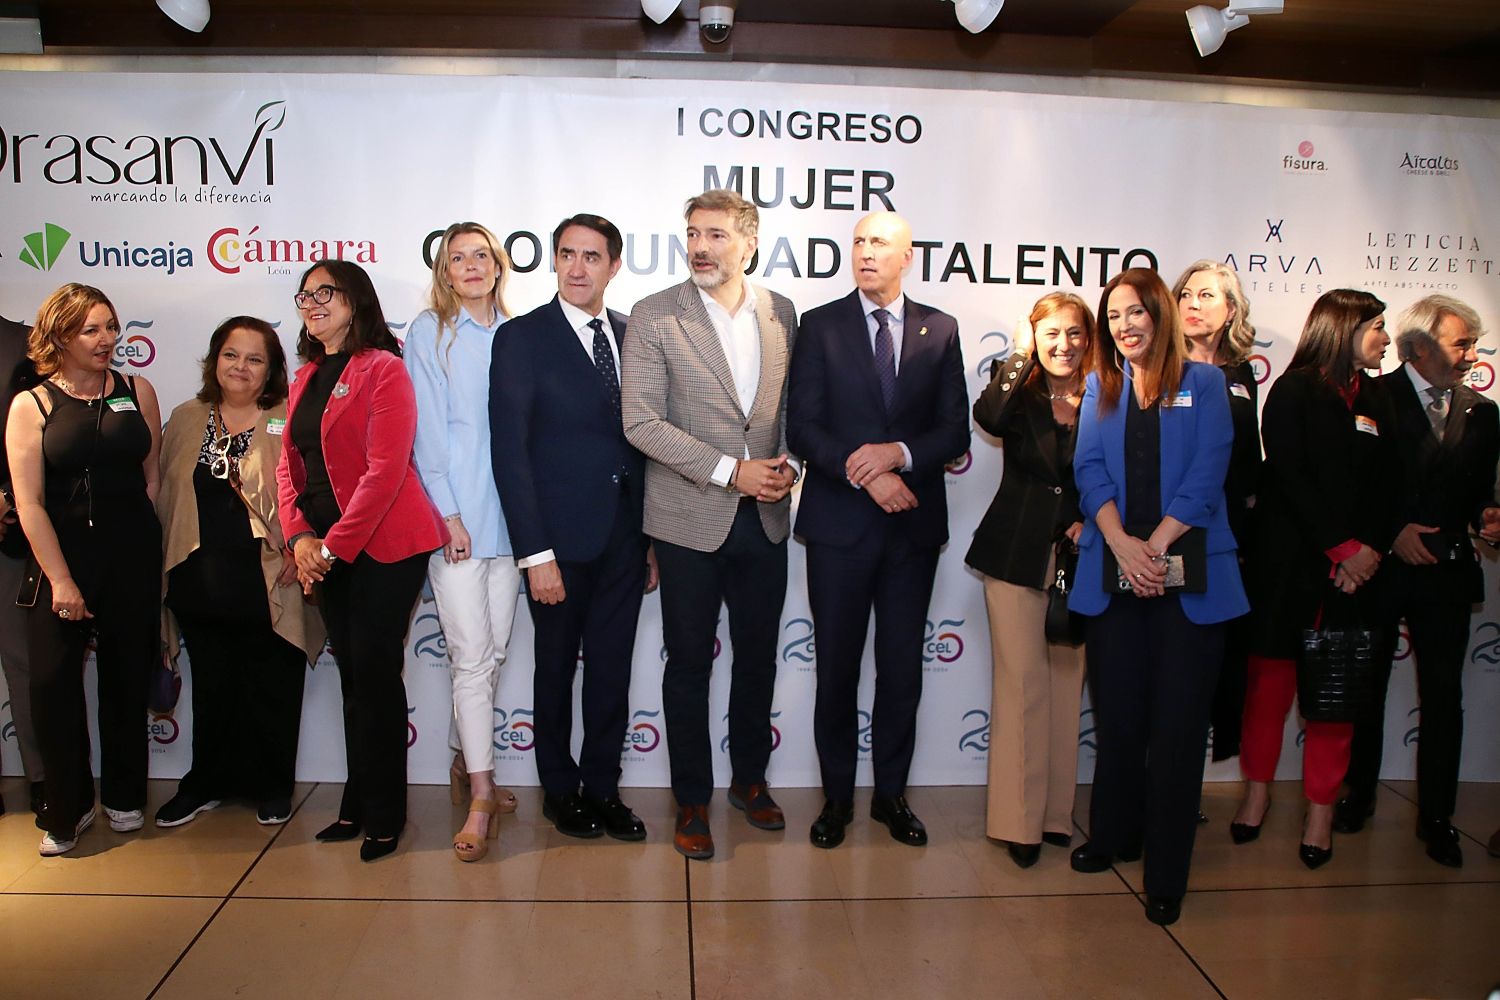 I Congreso Mujer oportunidad y talento del CEL | Peio García / ICAL